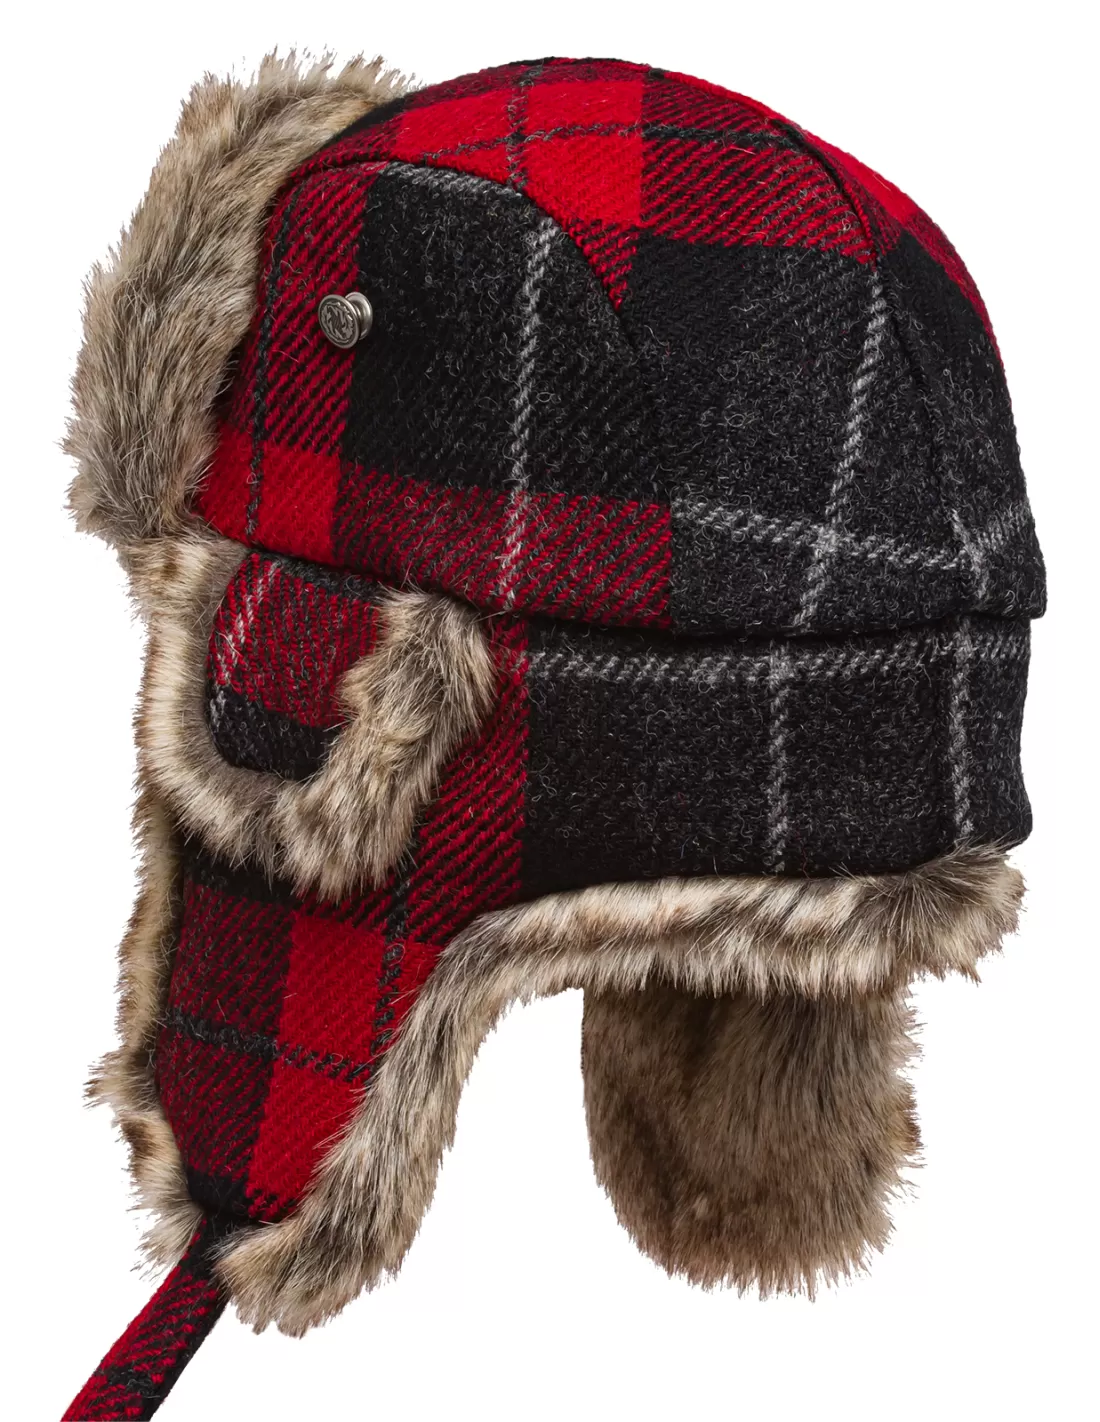 Lumberjack trapper cap made of genuine Harris Tweed wool and